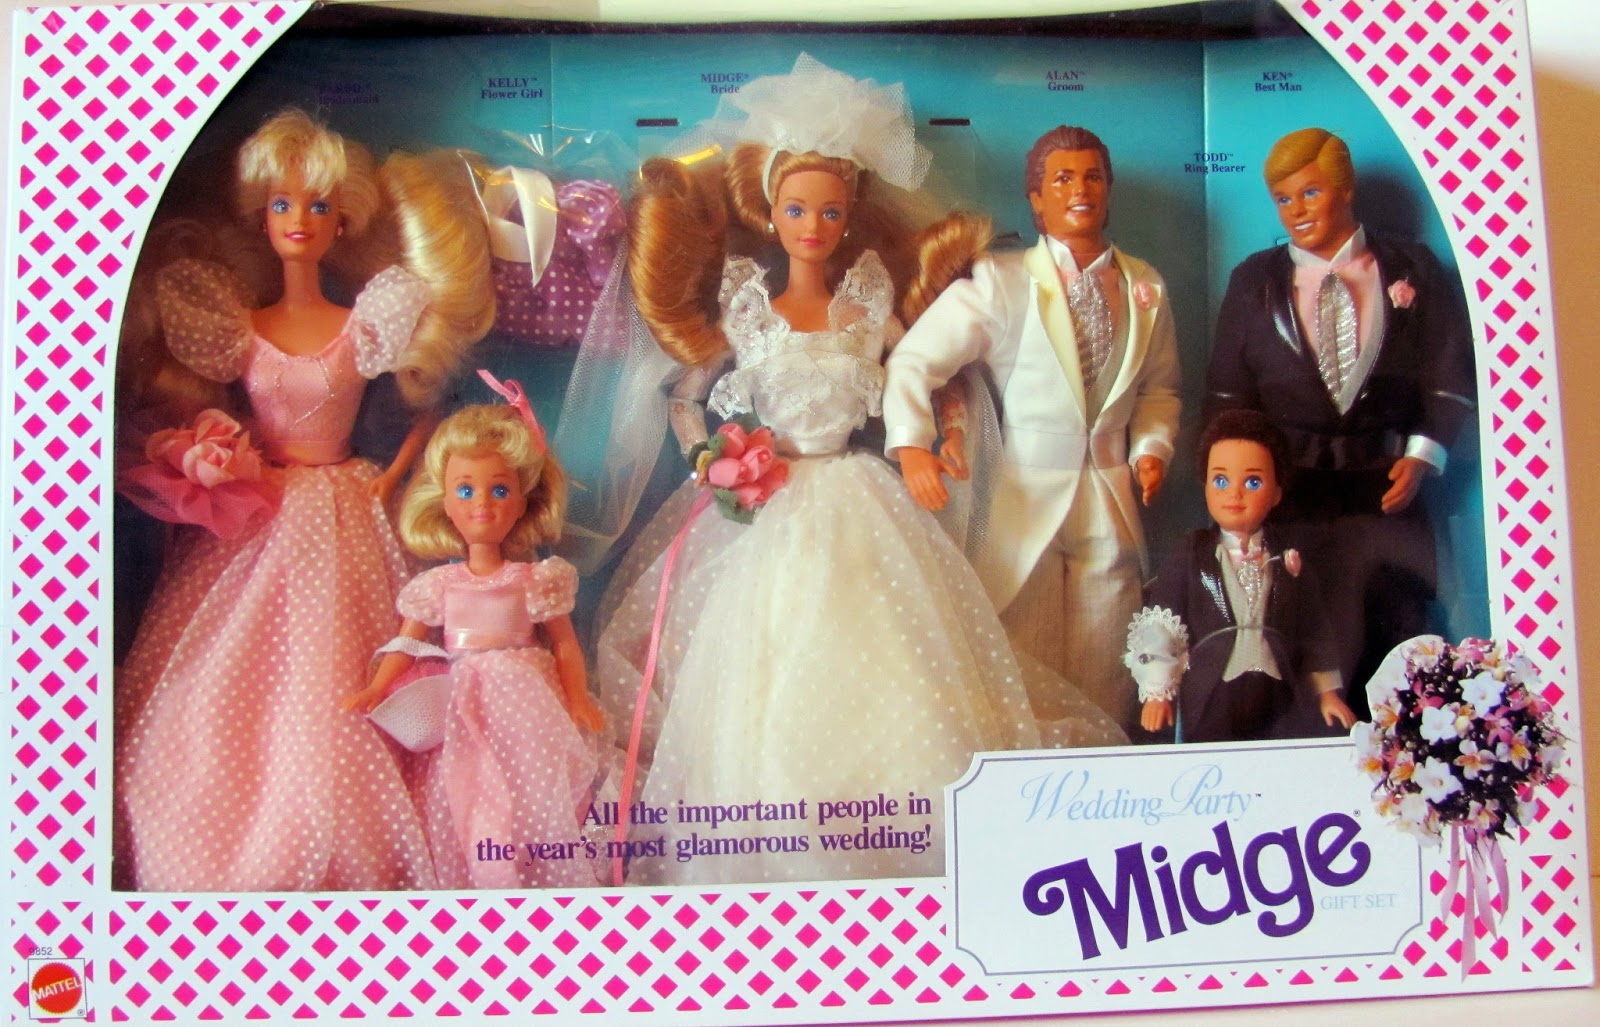 barbie doll wedding set